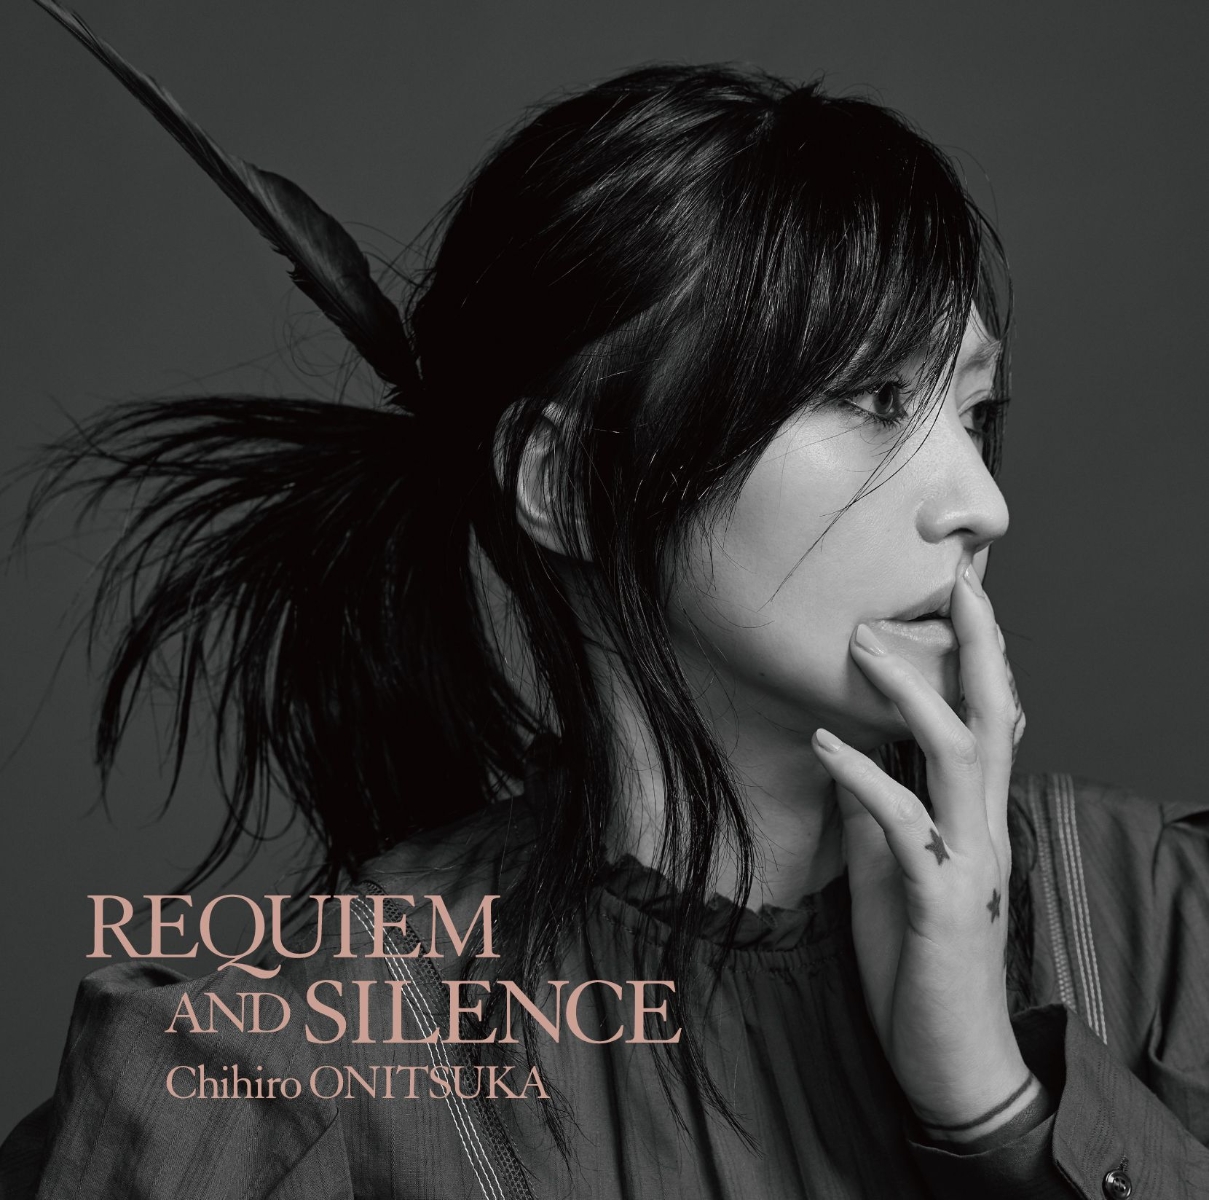 初回限定20th anniversary オールタイムベストアルバム「REQUIEM AND SILENCE」 (初回限定盤 2CD)